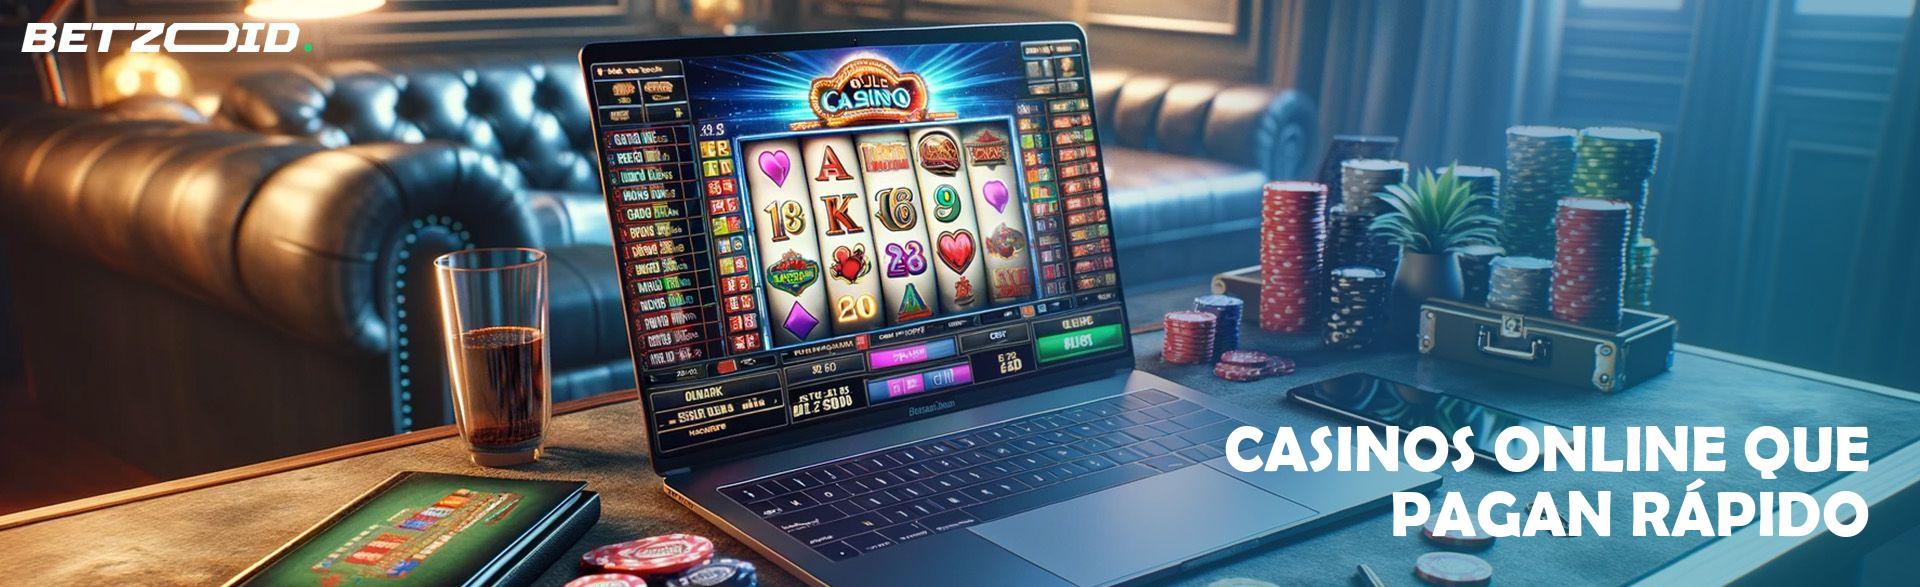 Casinos Online Que Pagan Rápido.